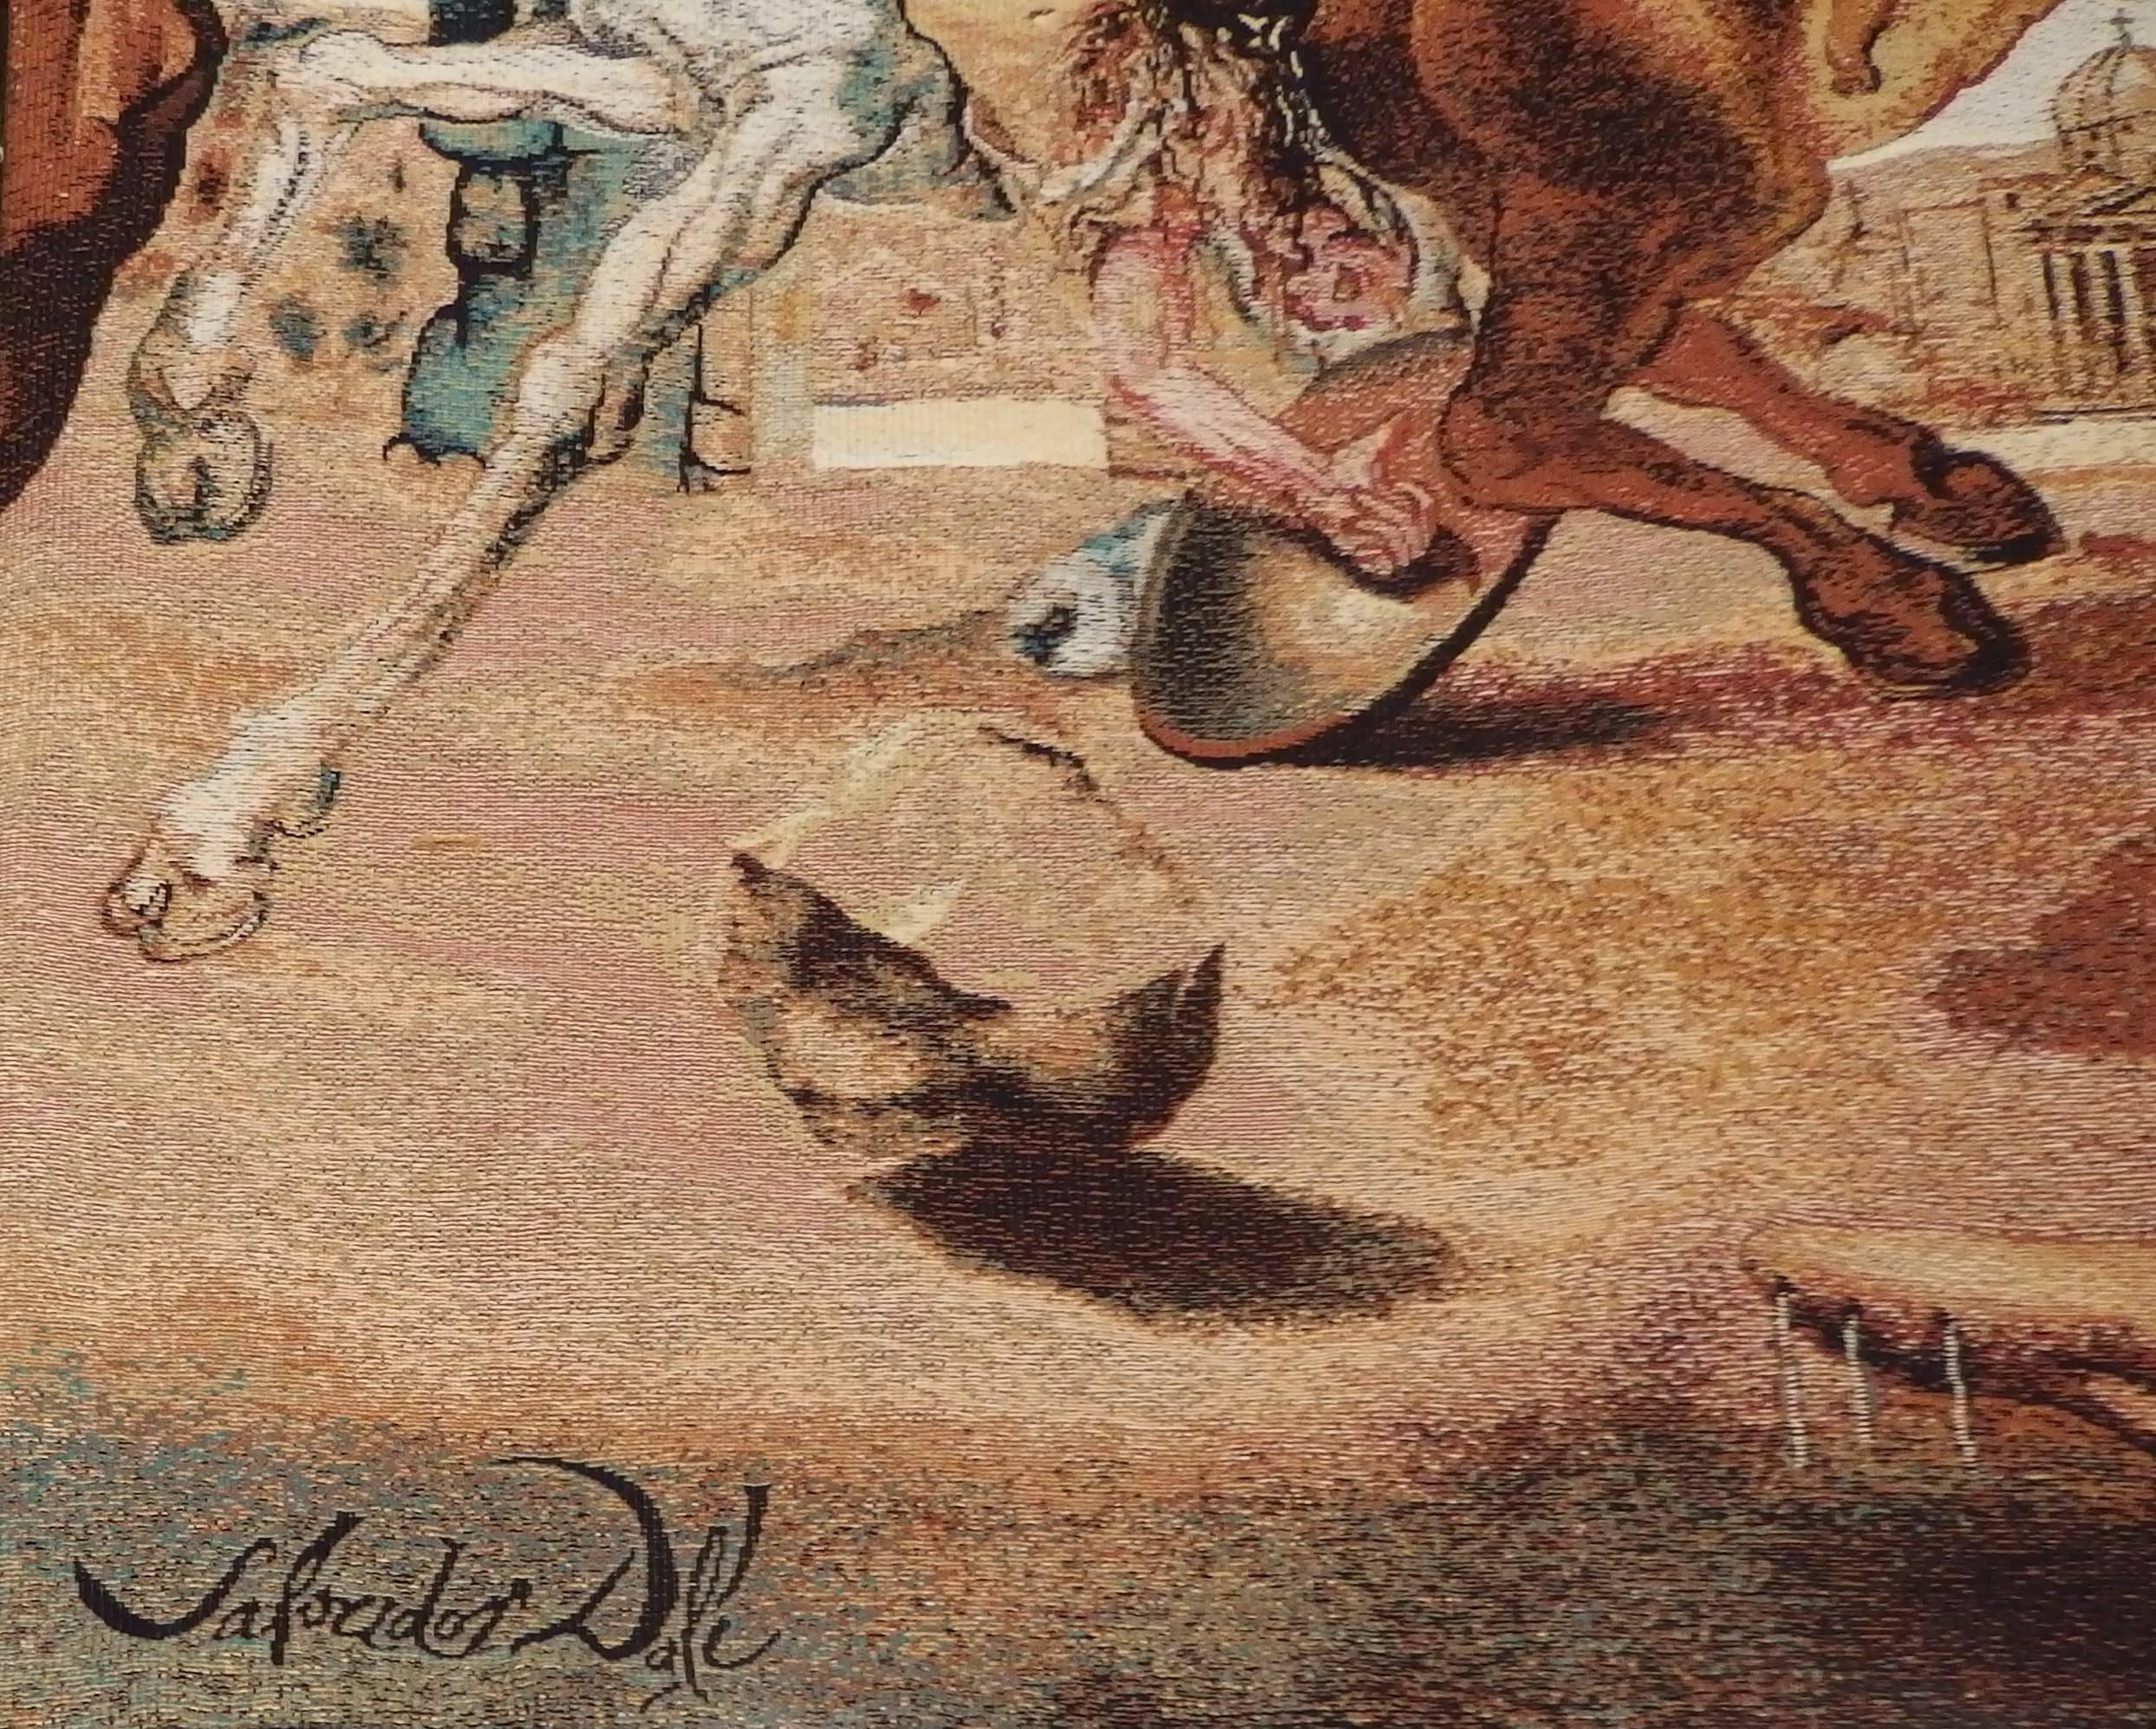 Bataille Autour d´un Pissenlit - Signed vintage tapestry - 600 copies - Print by Salvador Dalí